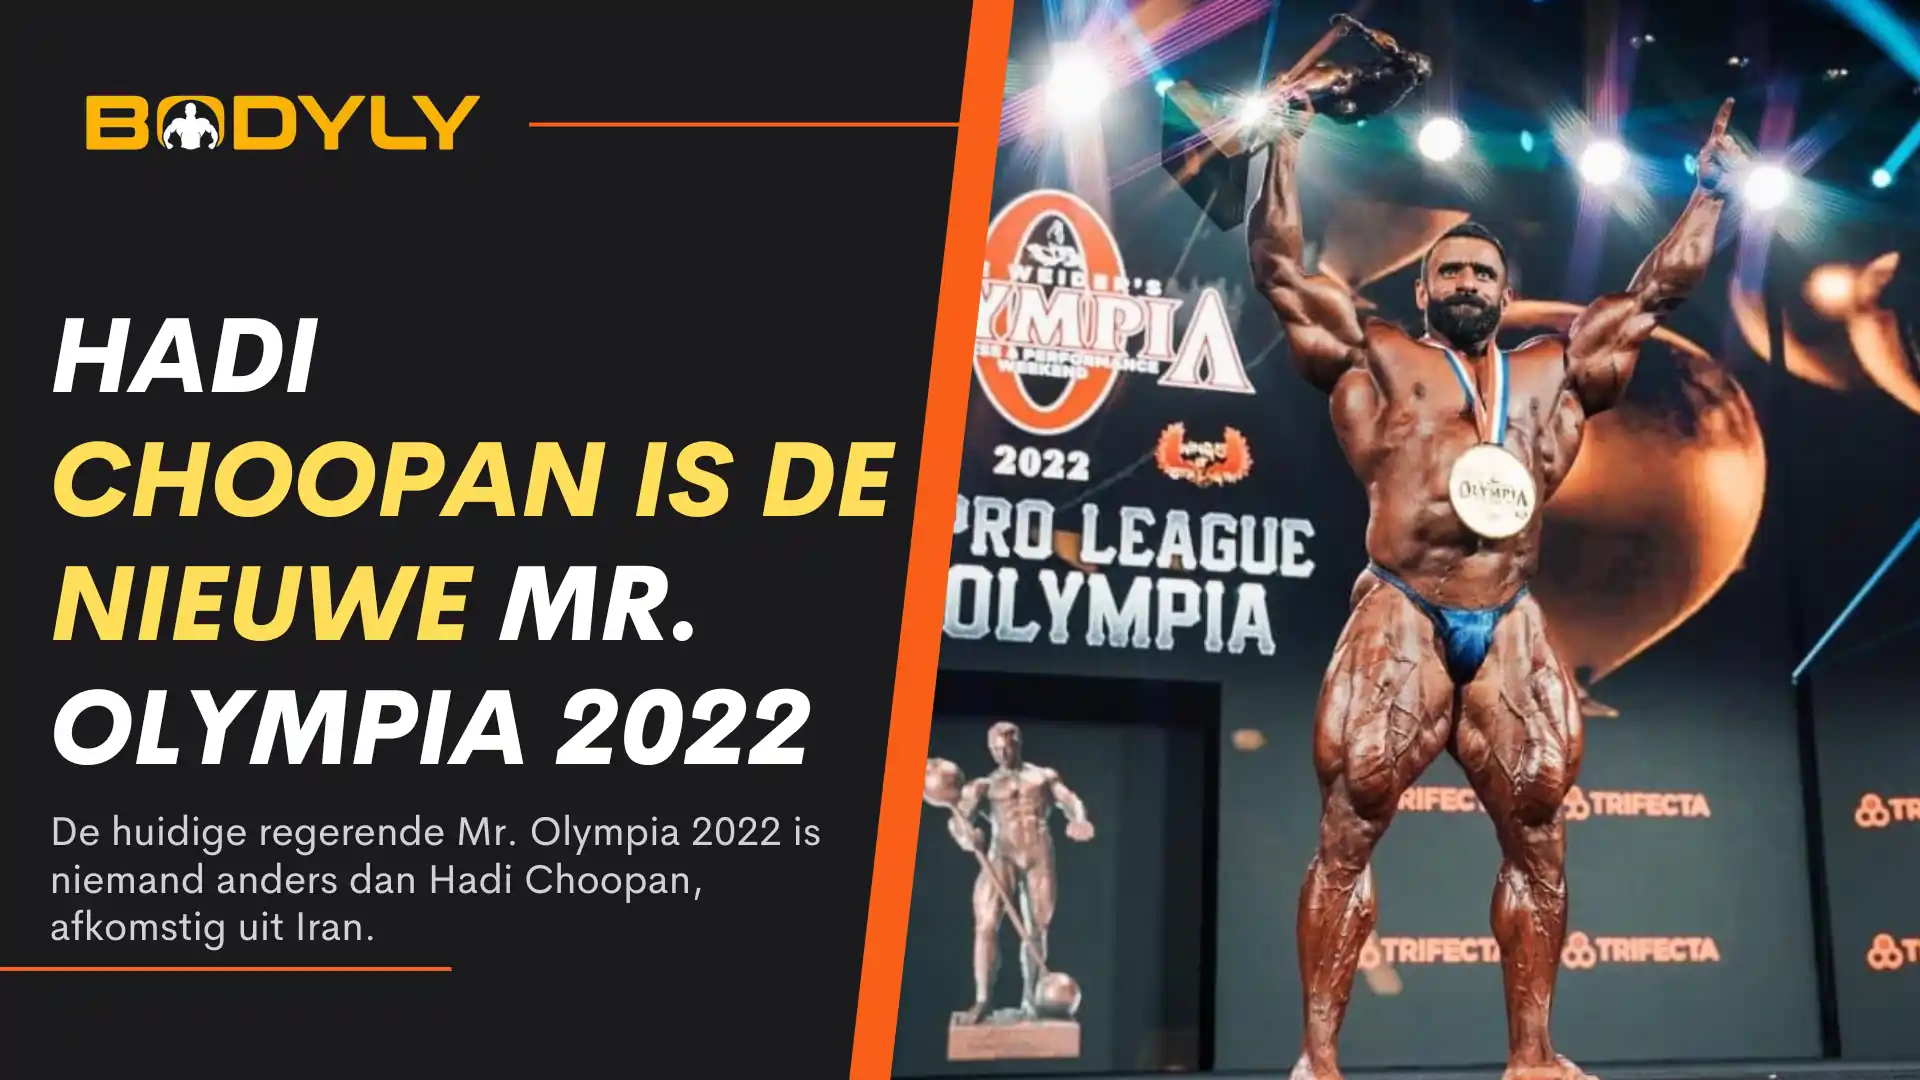 Hadi Choopan is de nieuwe Mr. Olympia 2022